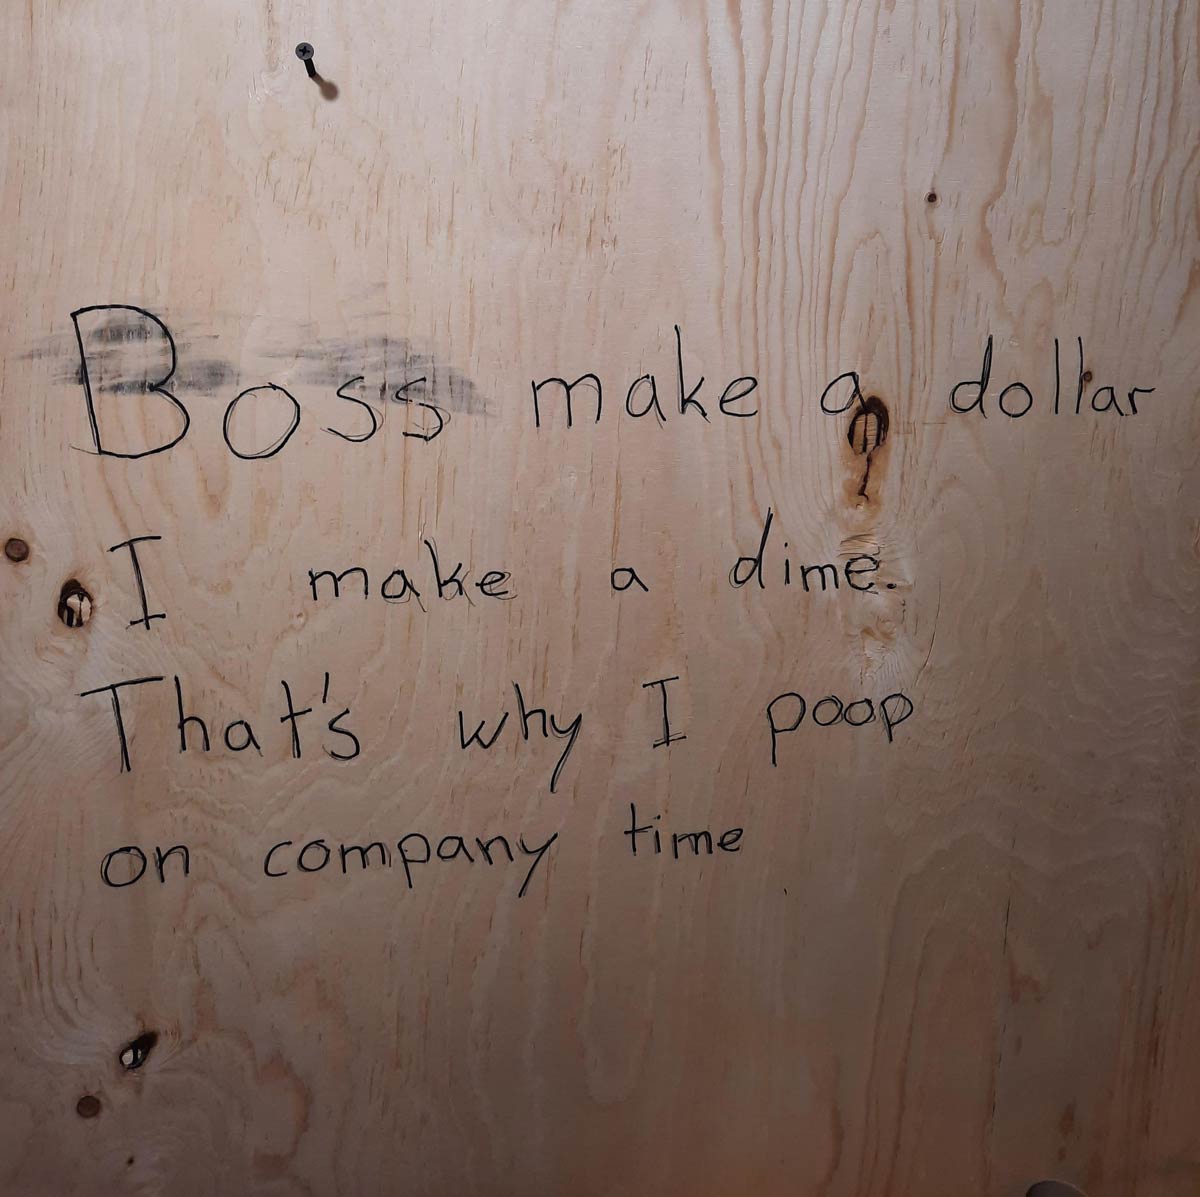 handwriting - dollar make a Boss make 9 "I o I dime That's why I poop on company I time